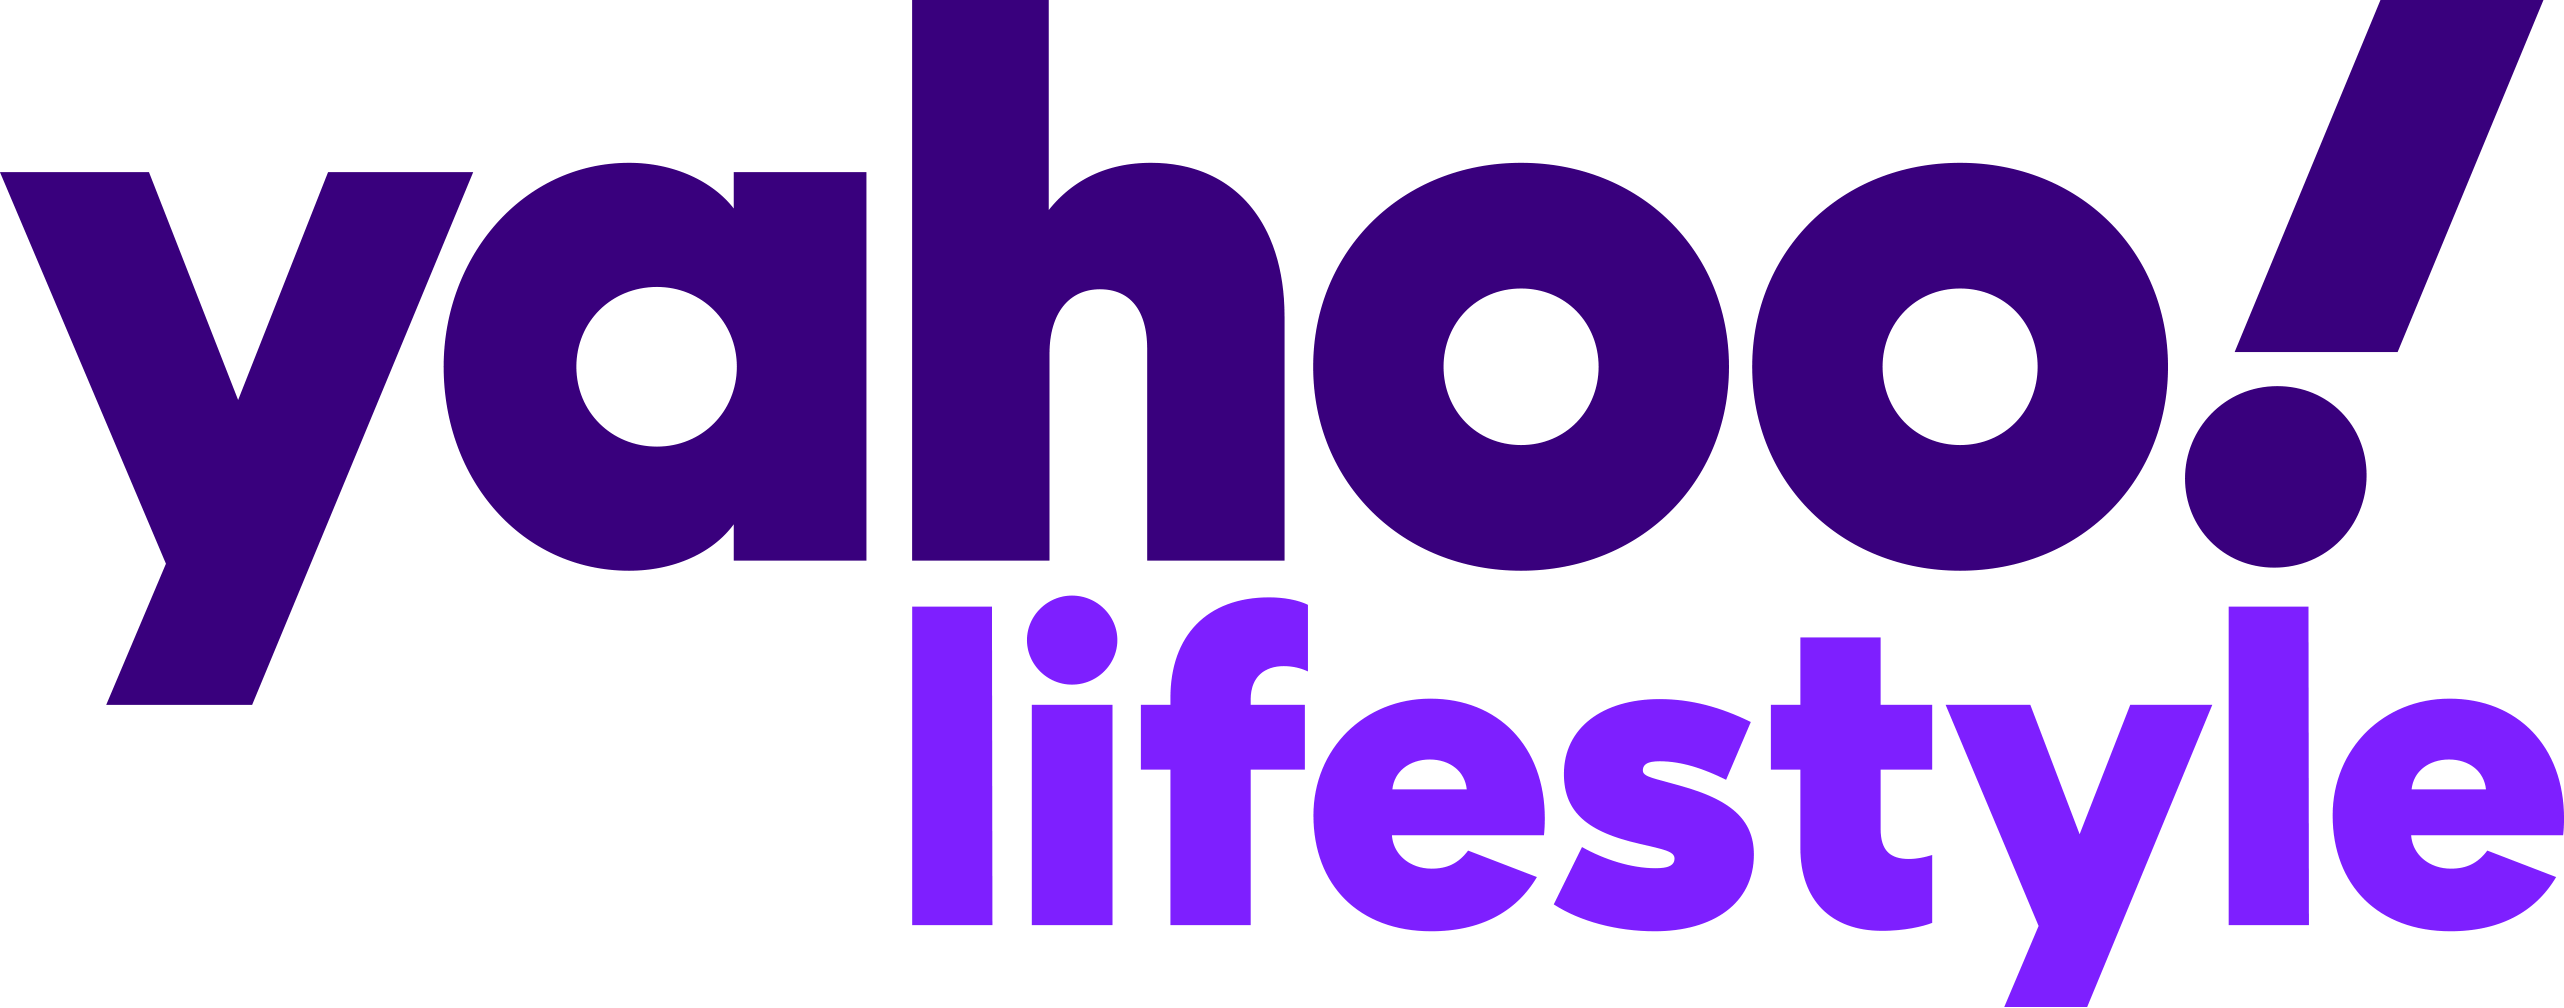 Yahoo Lifestyle